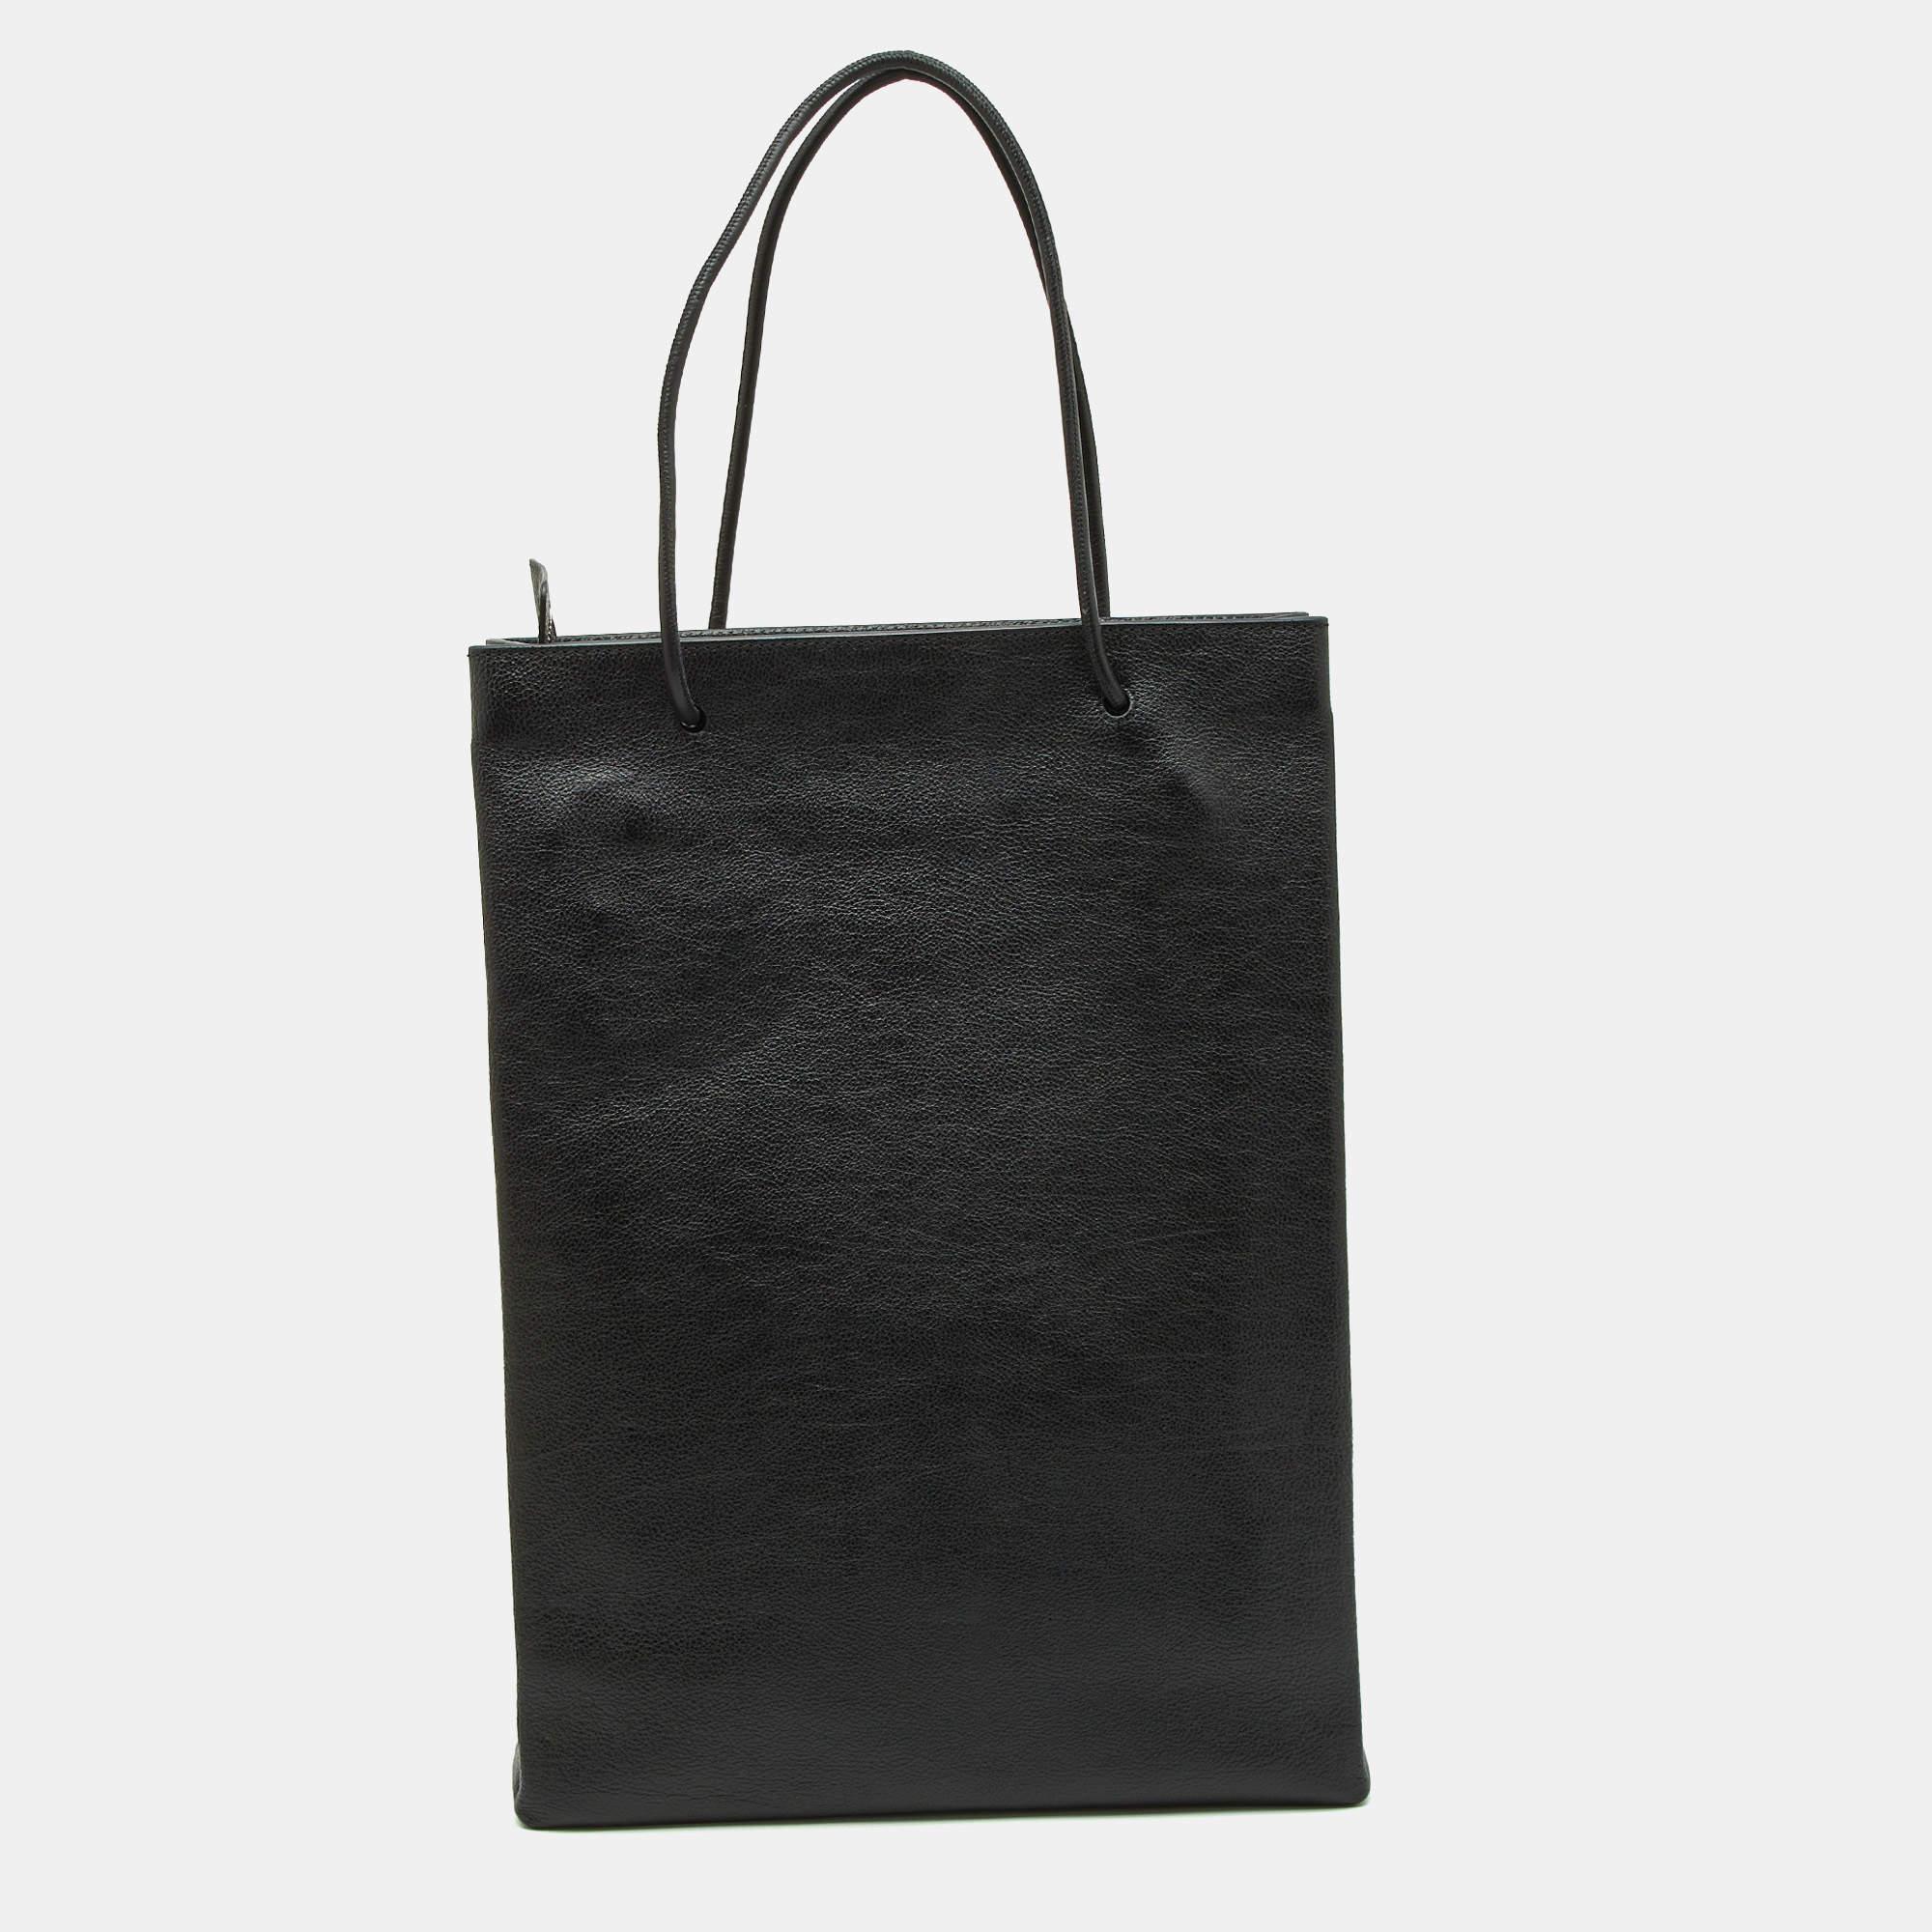 Assurez-vous que vos essentiels de la journée sont en ordre et que votre tenue est complète avec ce sac Balenciaga. Fabriqué à partir des meilleurs matériaux, ce sac porte la signature de la Maison Maison Maison en termes d'artisanat d'art et